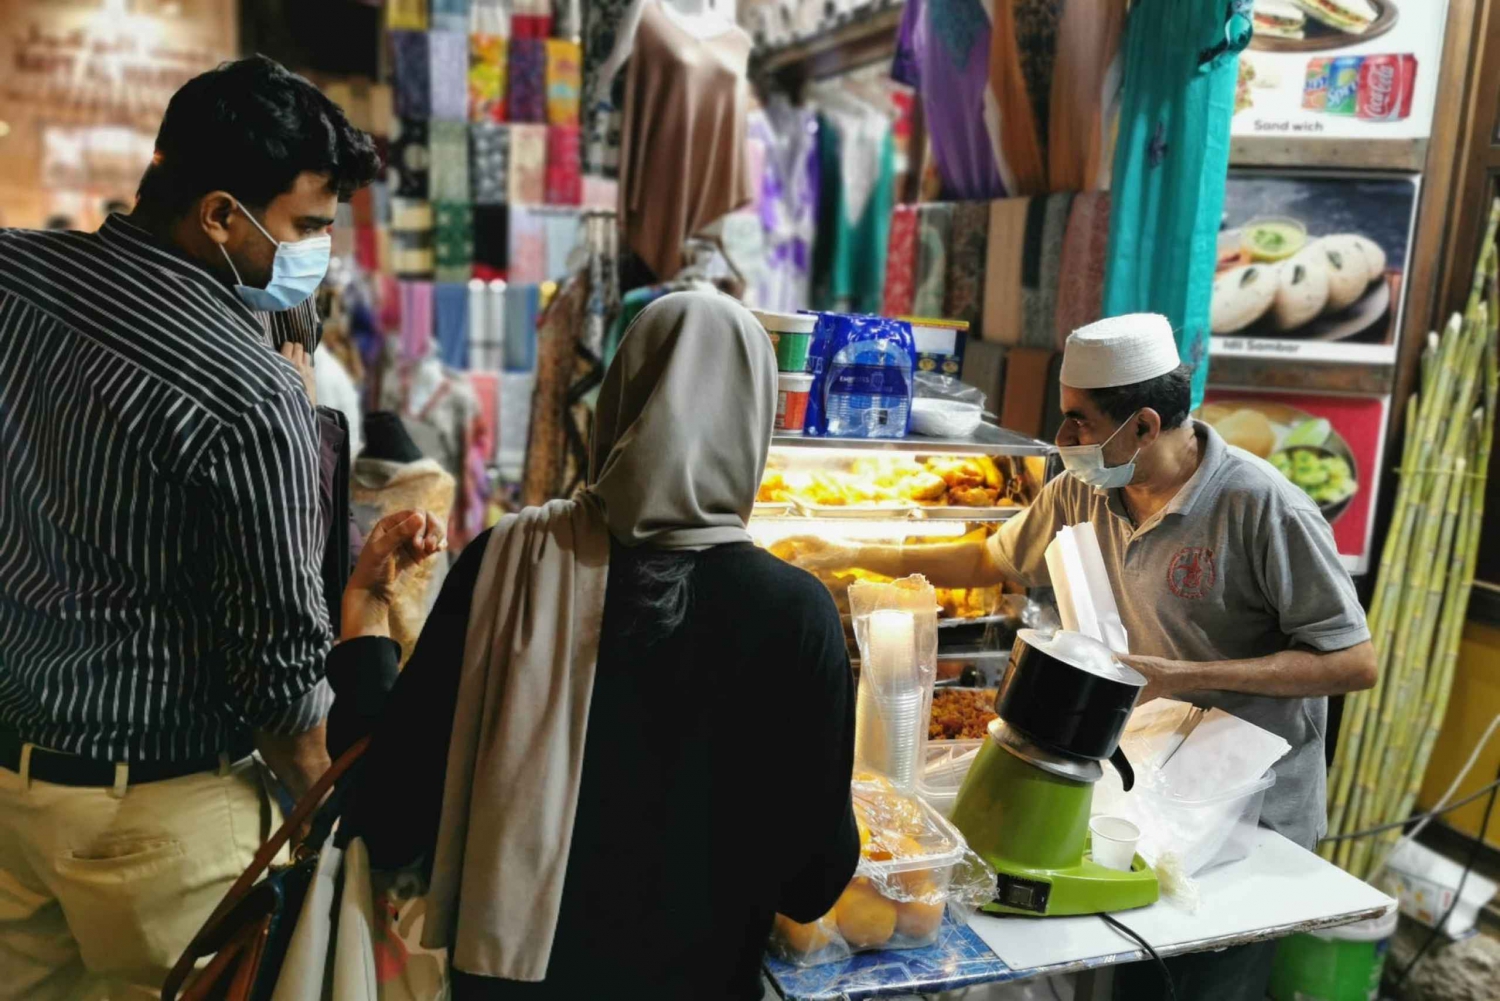 Dubai: Visita de medio día a la comida callejera